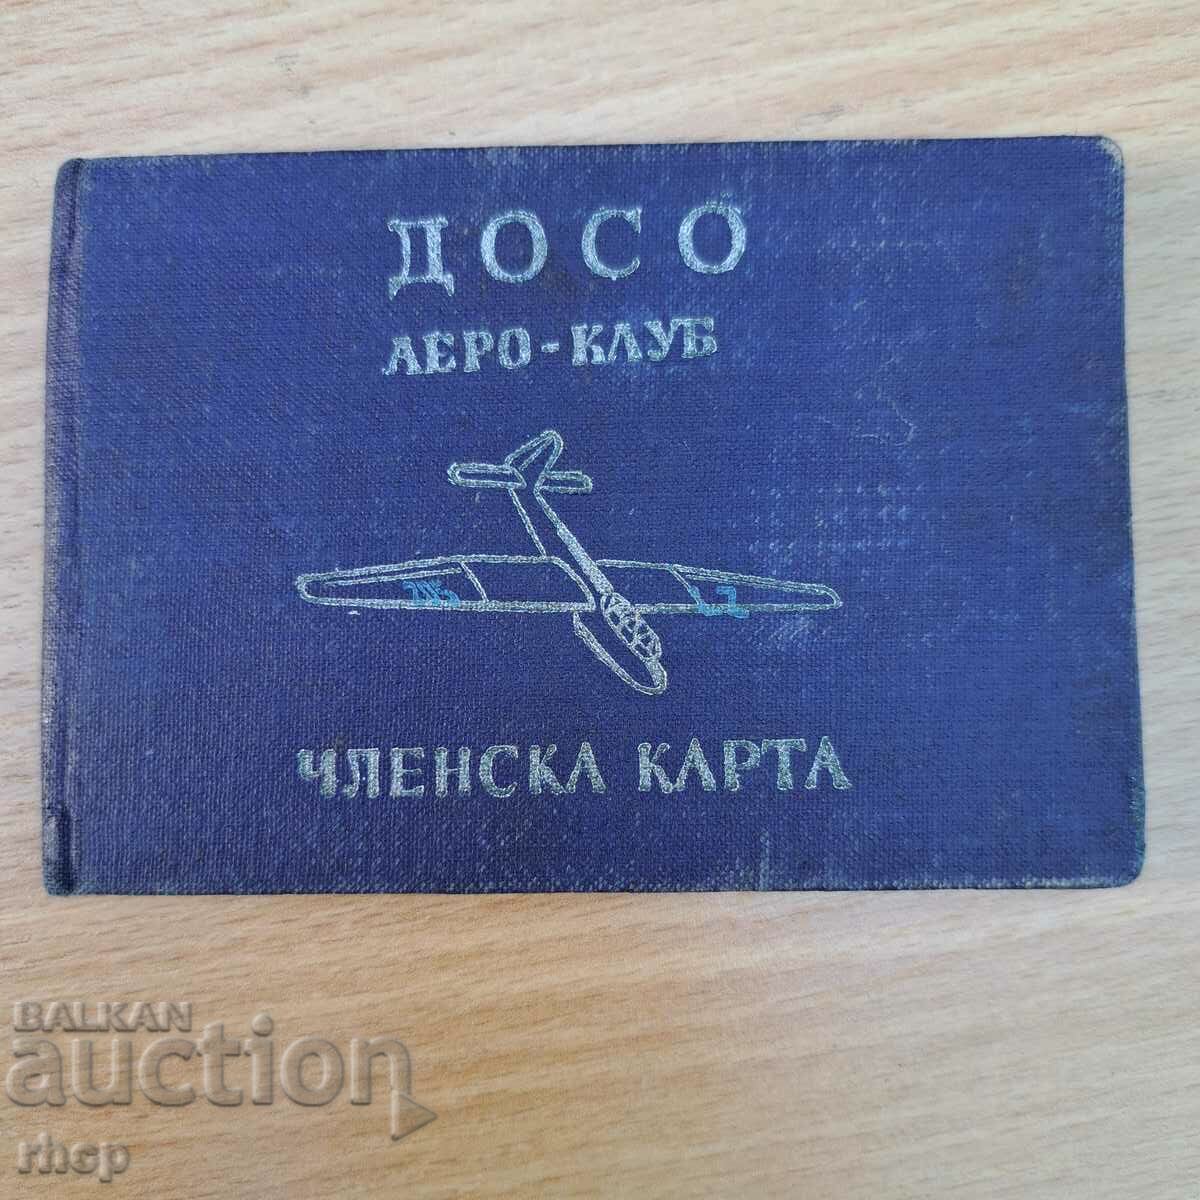 Aeroclub DOSO 1956 membership card pilot